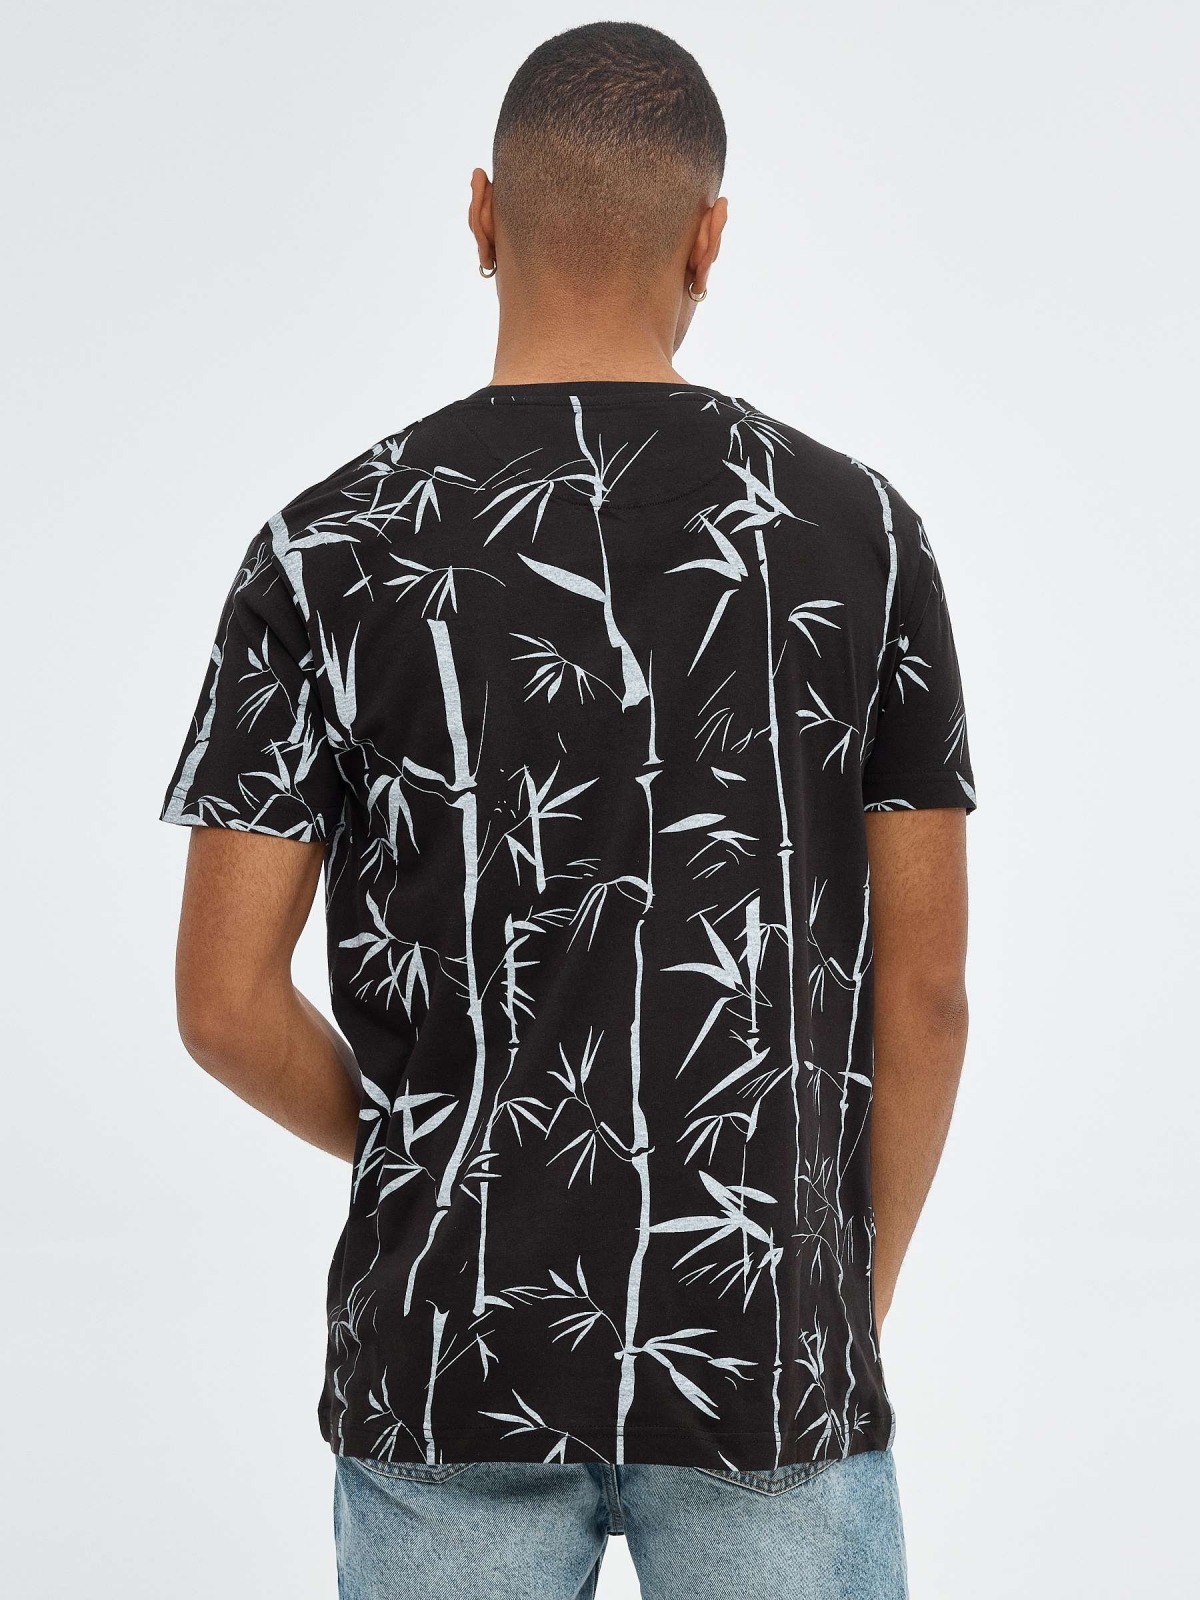 T-shirt estampada de bambu preto vista meia traseira